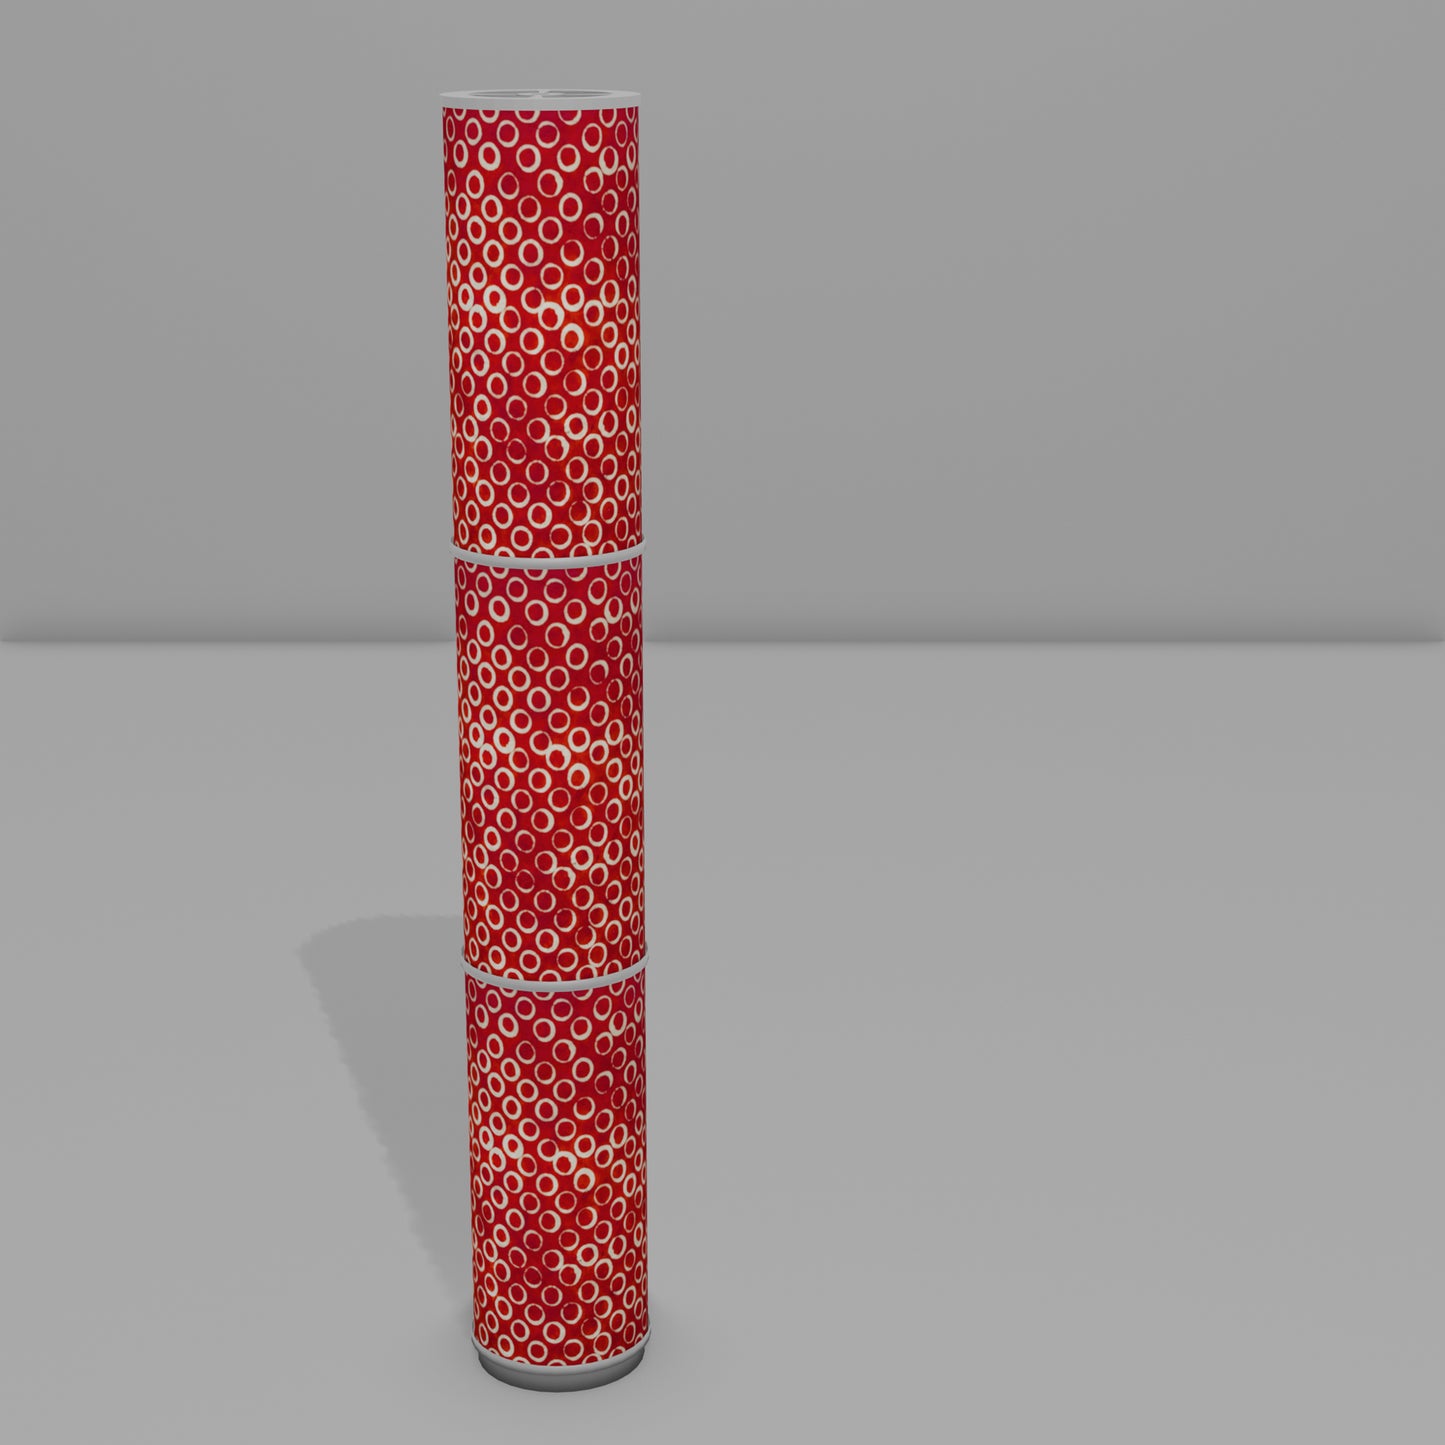 3 Panel Floor Lamp - P83 - Batik Red Circles, 20cm(d) x 1.4m(h)